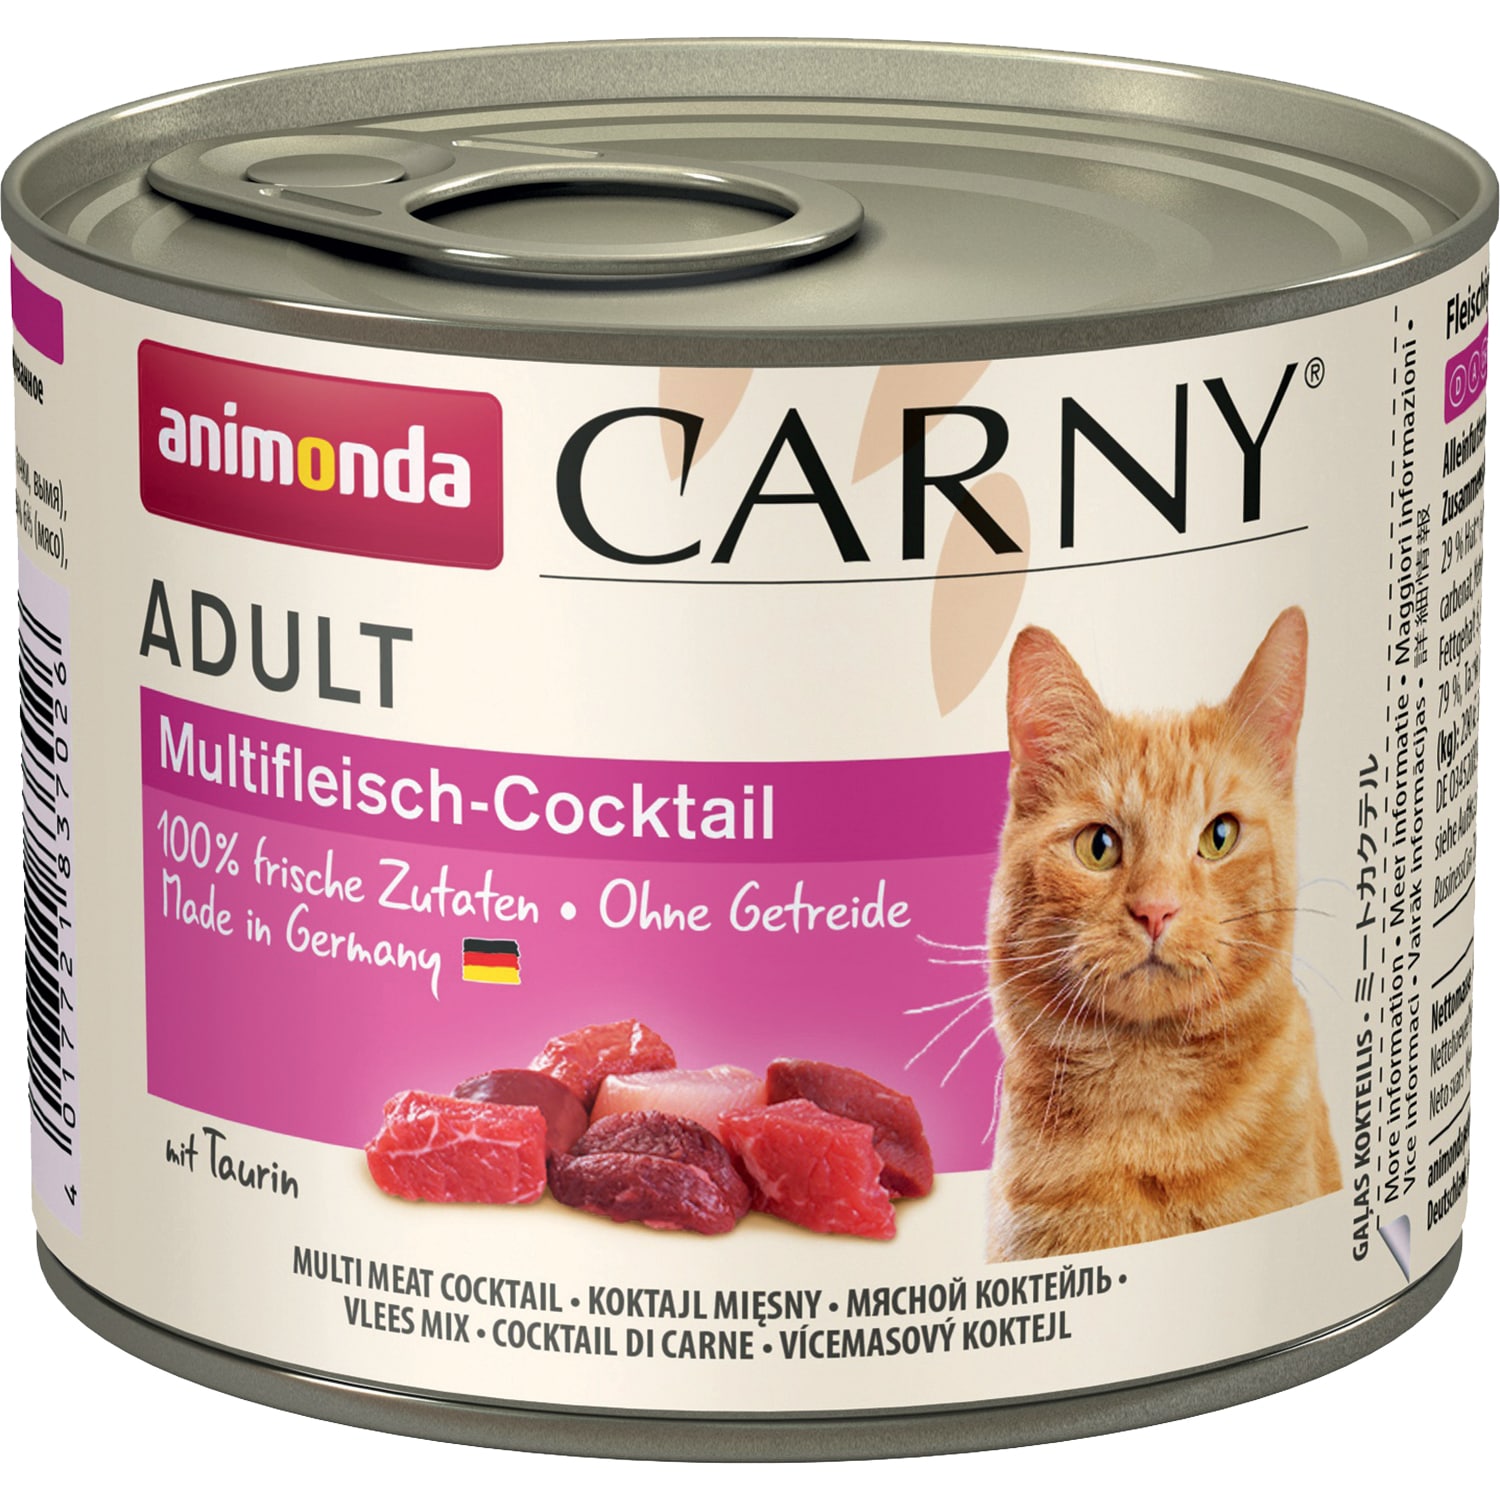 Carny Adult консервы для кошек старше 1 года, коктейль из разных сортов мяса, Animonda